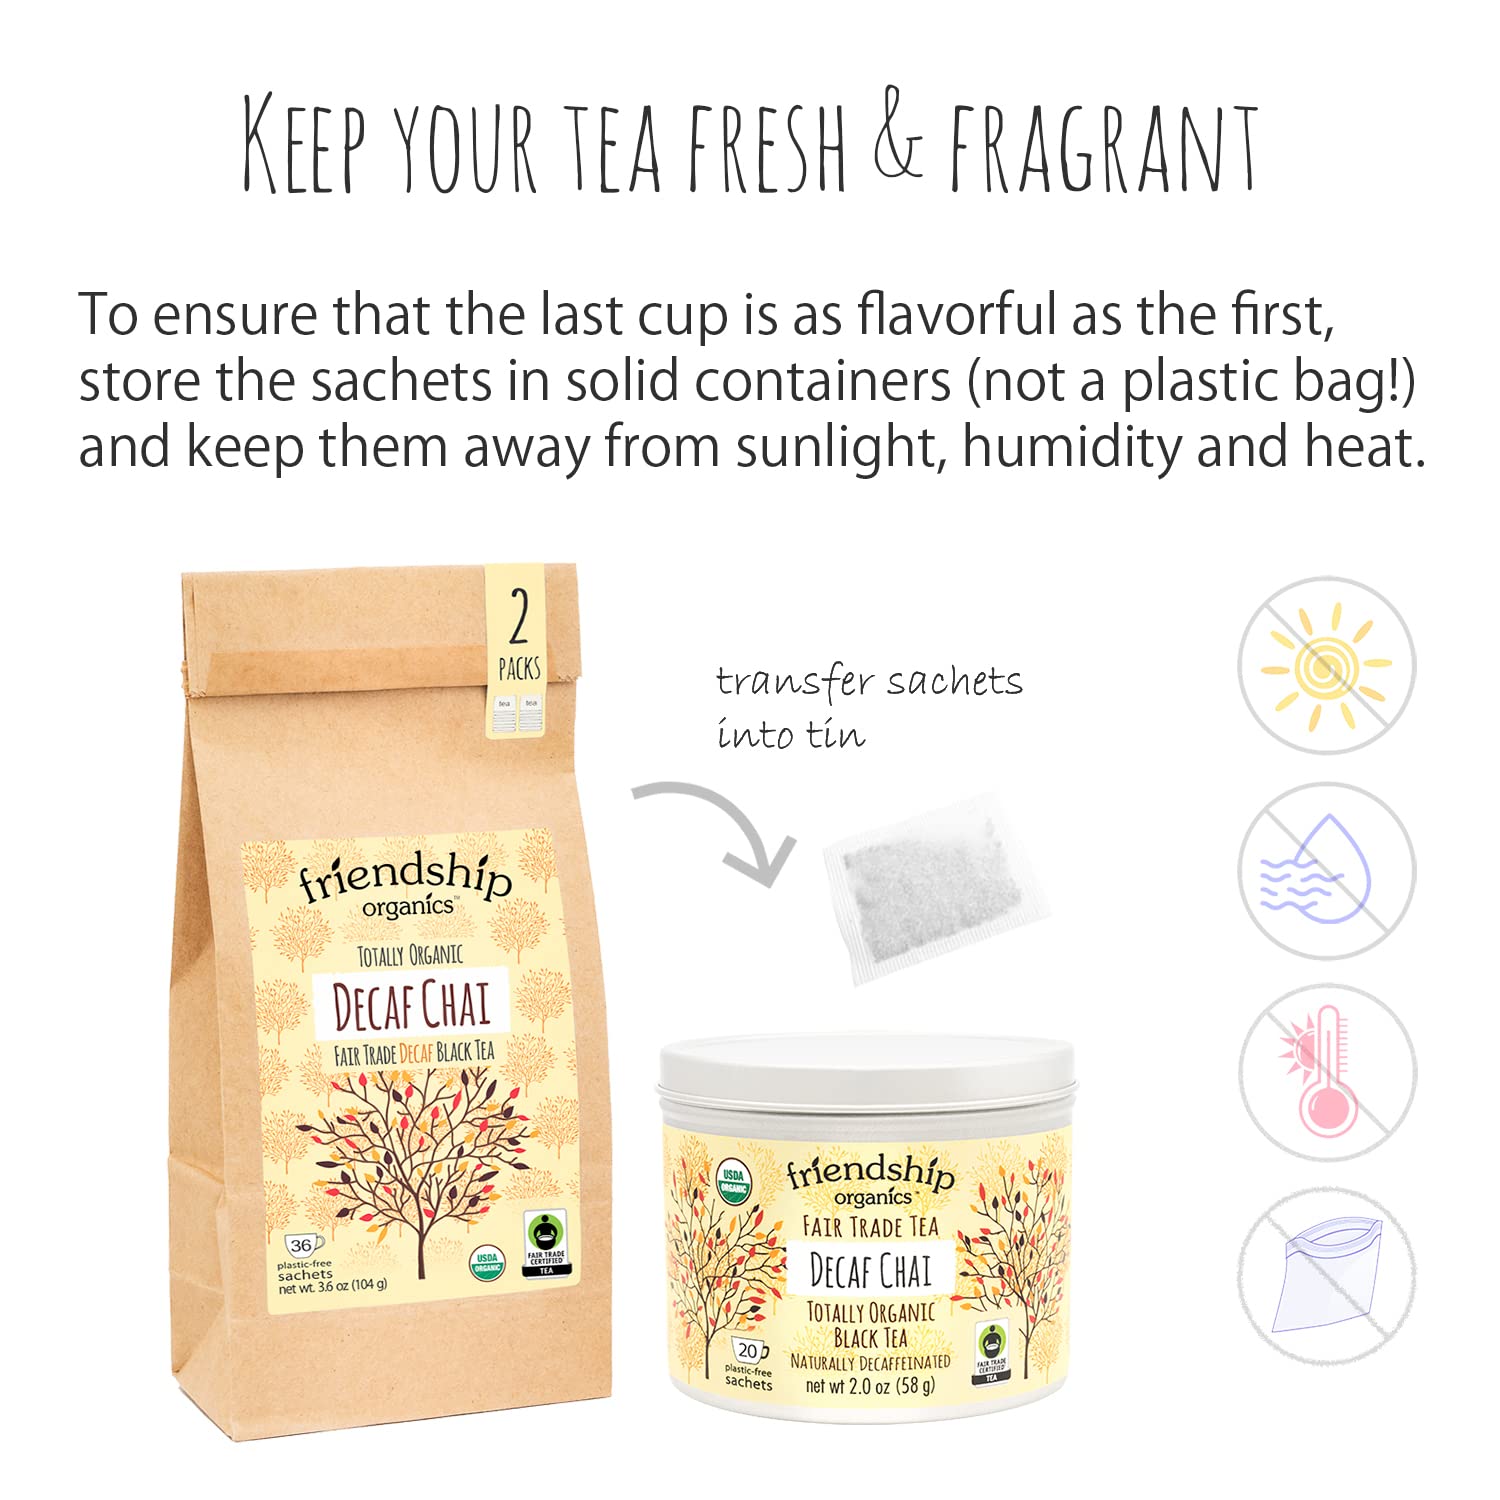 Friendship Organics Decaf Chai Tea Bags, Organic and Fair Trade 36 count